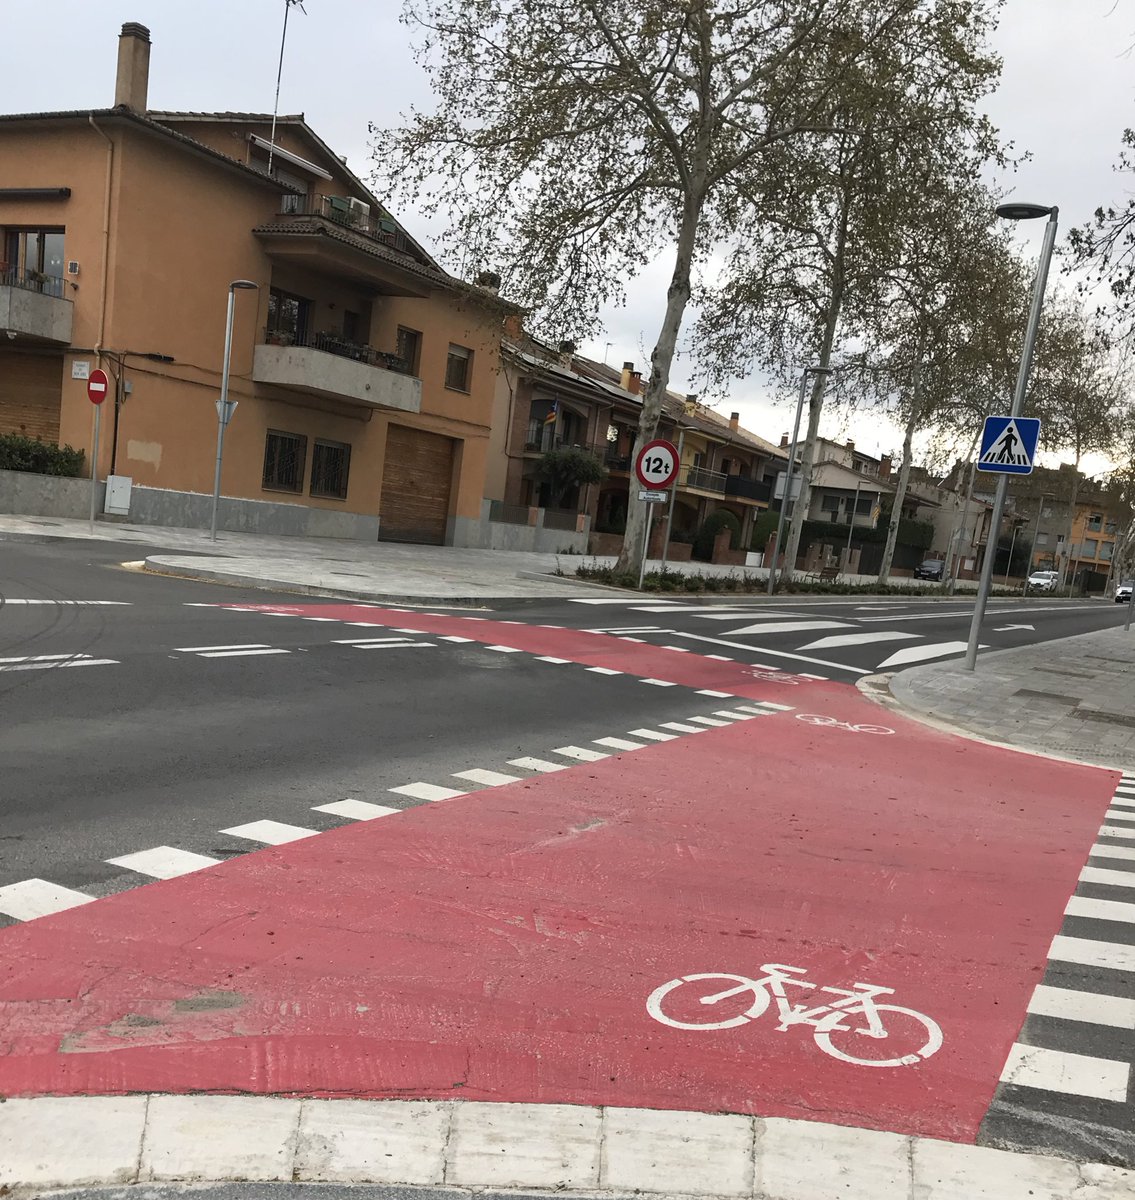 Demanem a @aj_vic quin és el sentit d'aquest tros pintat de color vermell sense cap continuitat. 😵🤔
El futur carril bici Calldetenes- Vic? Però com passaran les bicicletes pel carrer Gran? 
Esperem resposta! ☎️